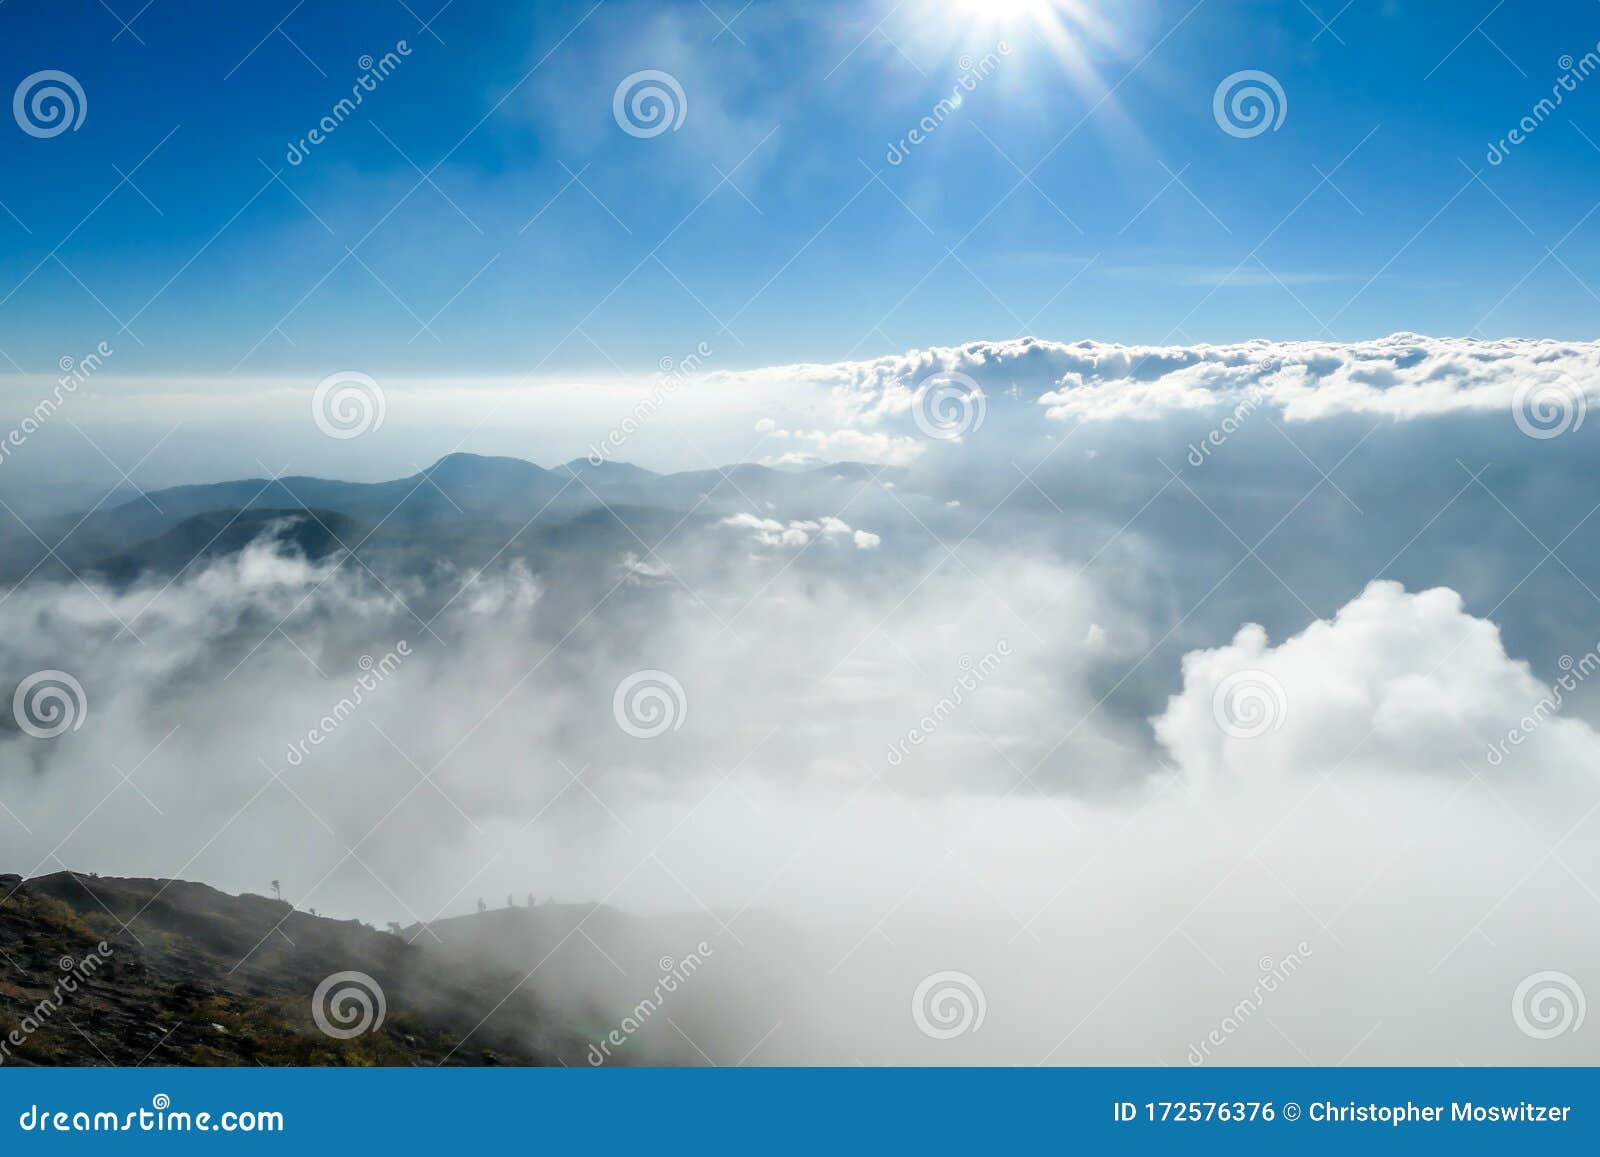 bajawa - sun shining above the clouds